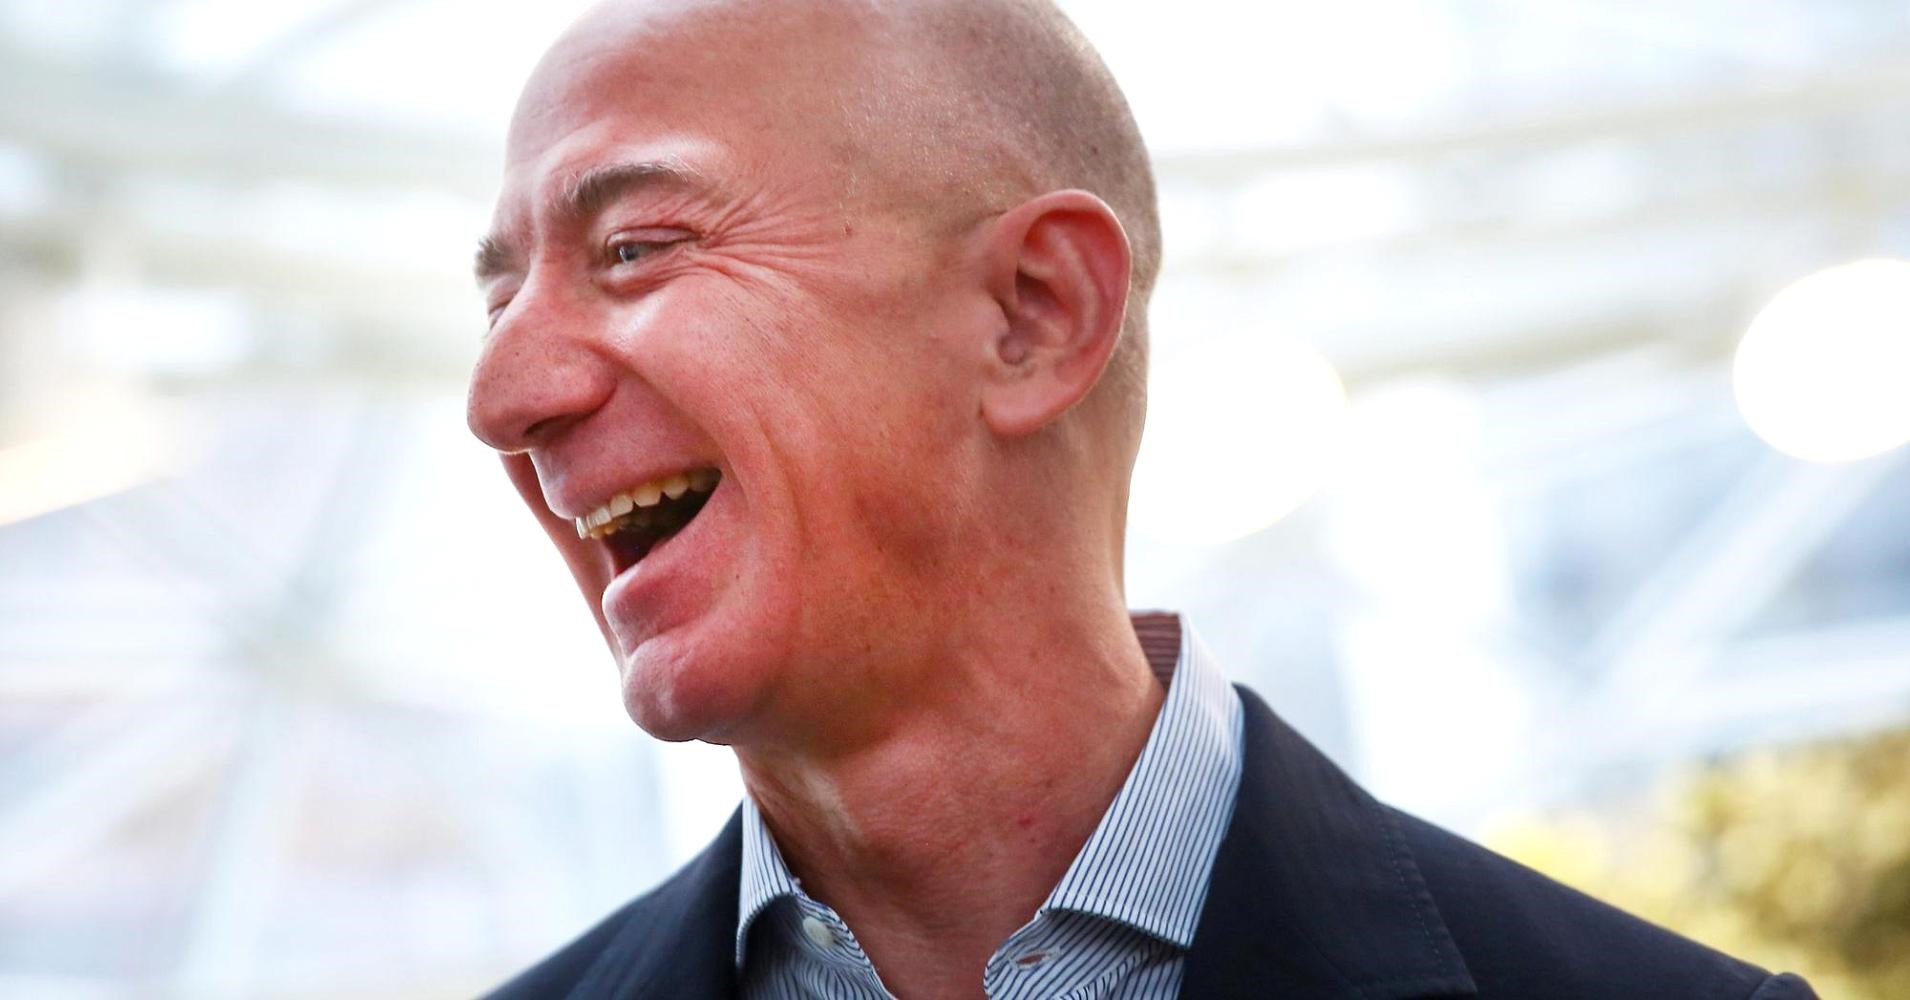 Năm 2018, Jeff Bezos là người đàn ông giàu nhất hành tinh với 160 tỉ USD. Năm 2019, CEO Amazon ly hôn vợ, tài sản của ông sụt xuống khá sâu. Tuy nhiên kể từ tháng 9.2019 đến nay, ông thu về 7 tỉ USD và vẫn là người giàu nhất.